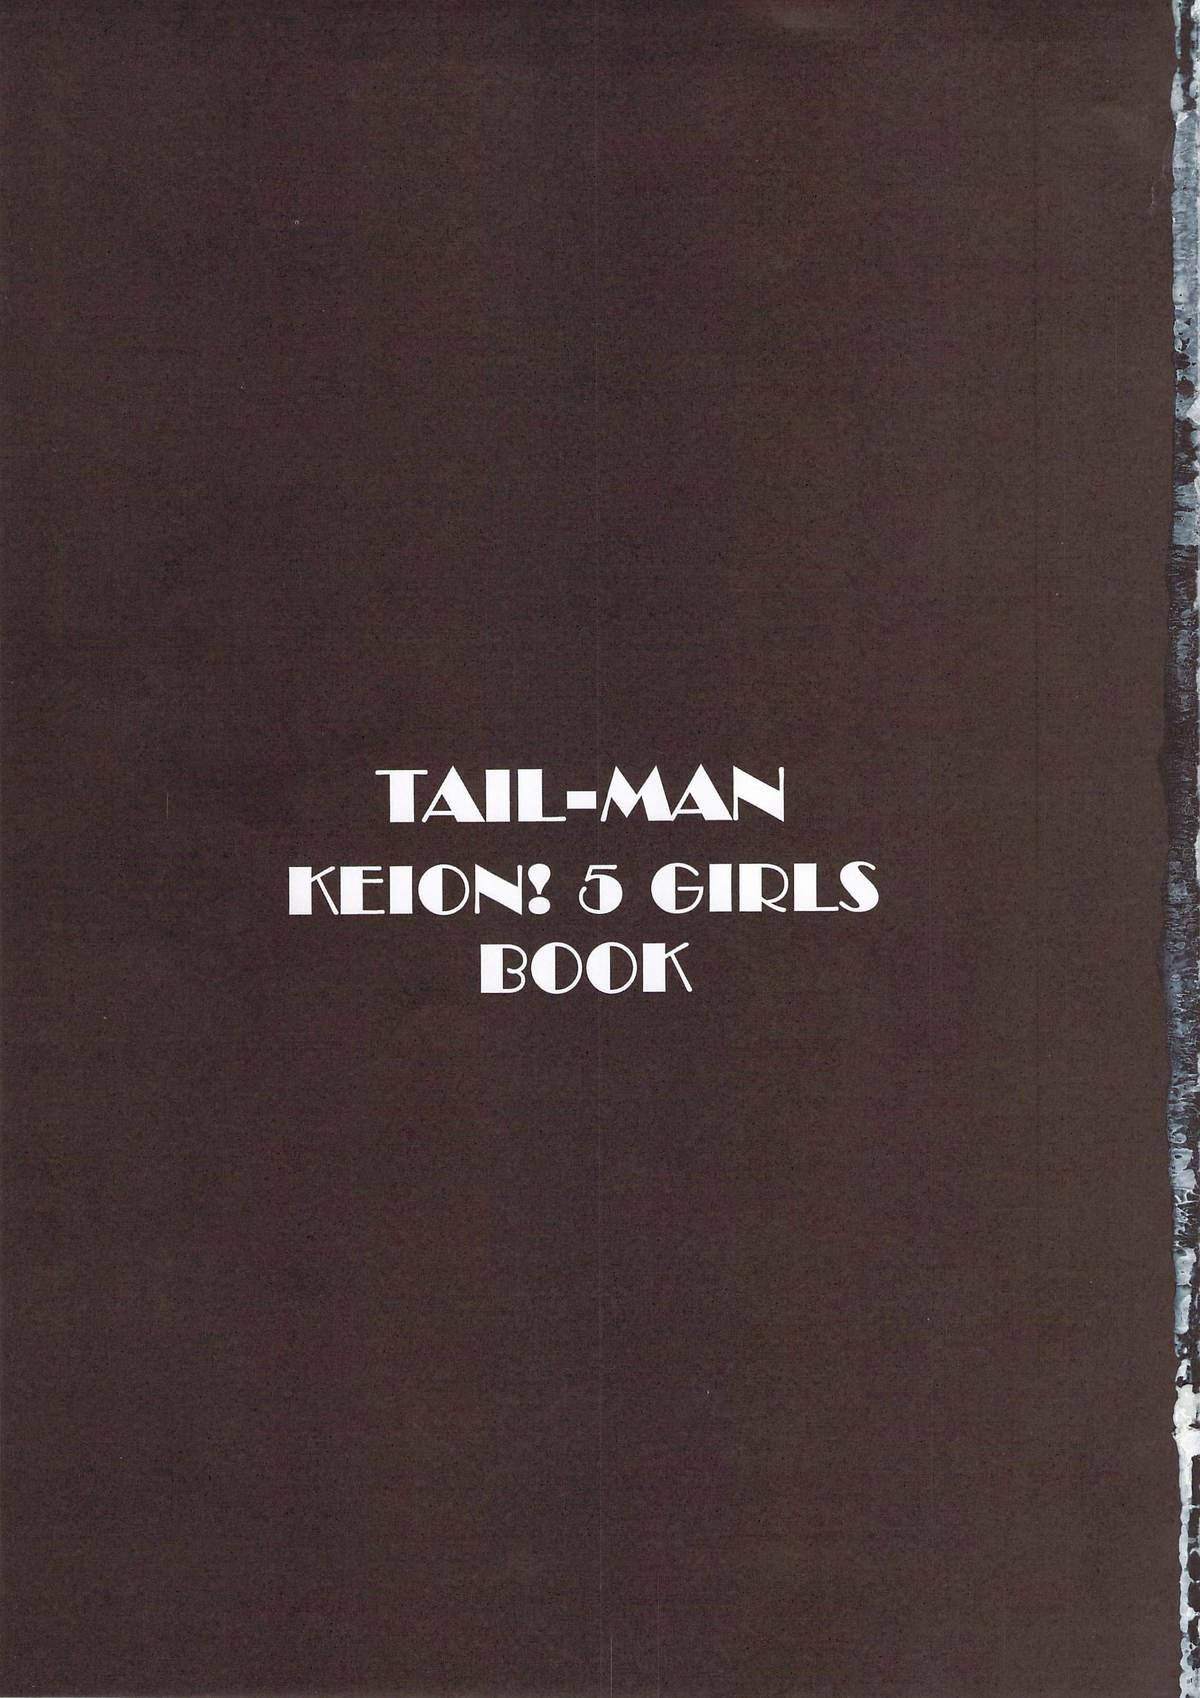 TAIL-MAN KEION! 5GIRLS BOOK BOOK 2